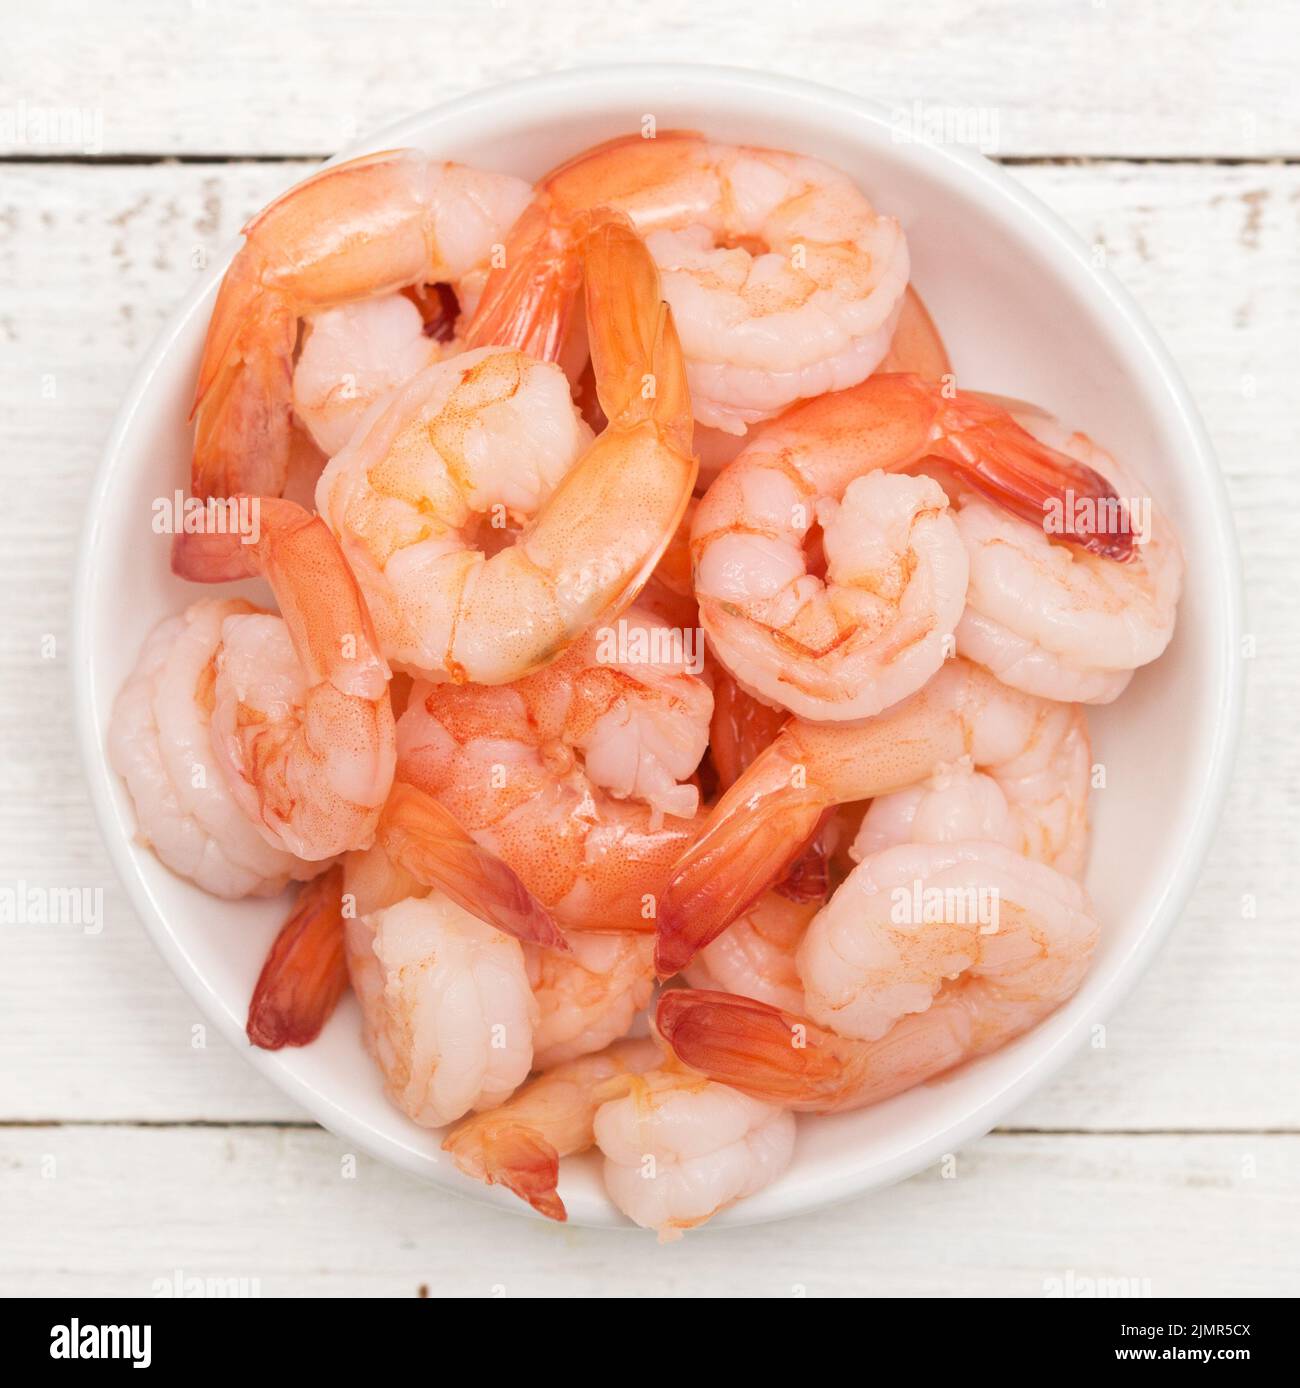 Marinated shrimps Stock Photo